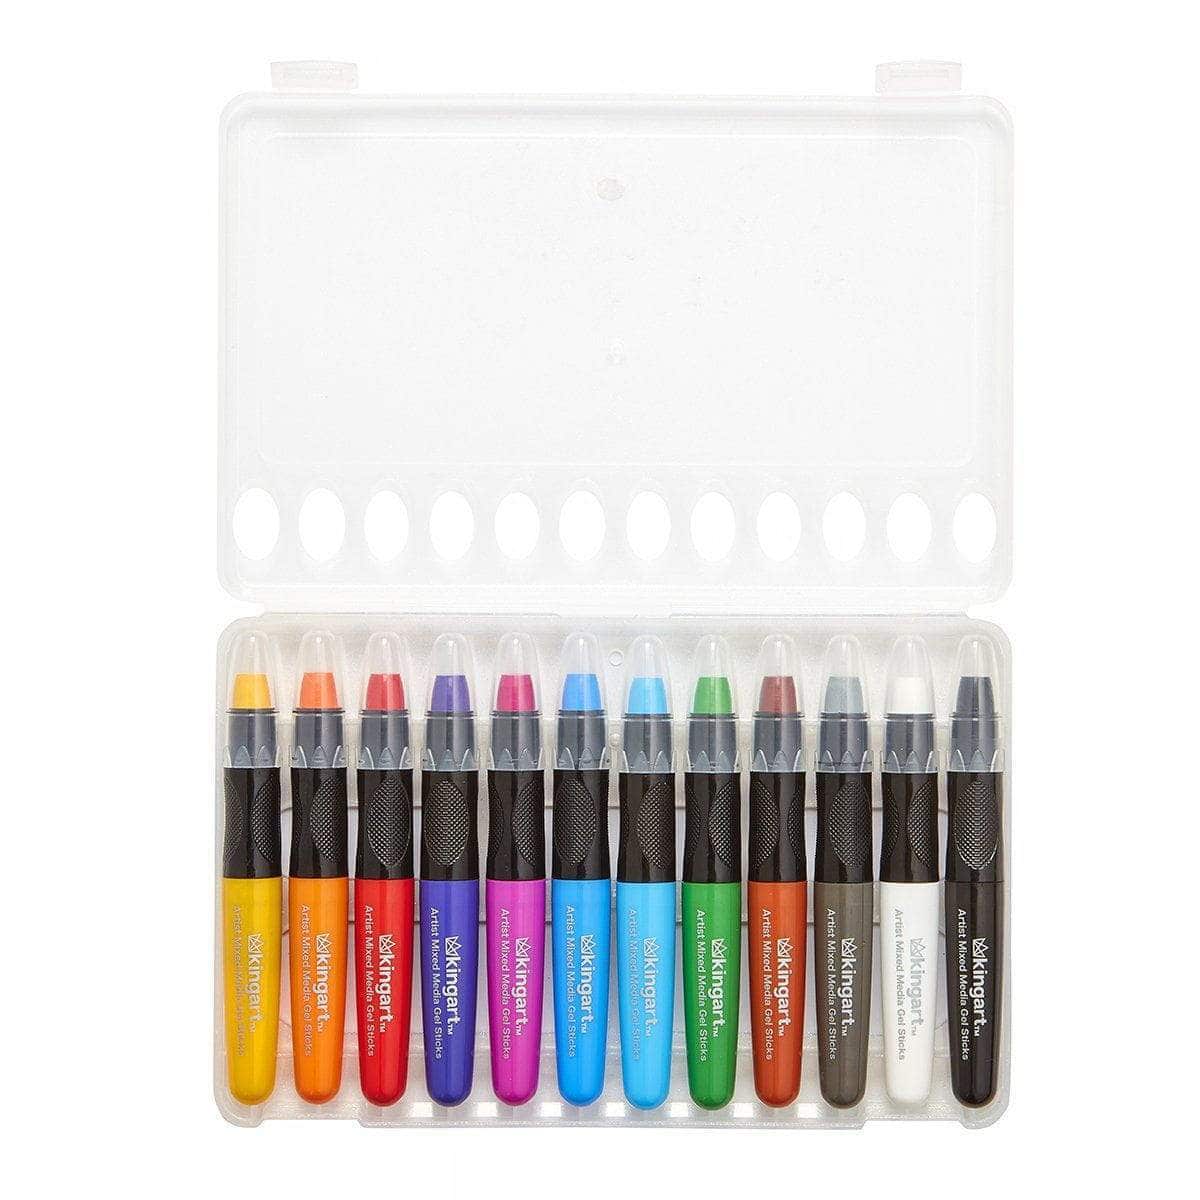 Kingart Artist Mixed Media Gel Stick Crayons, Set of 24 Unique Colors